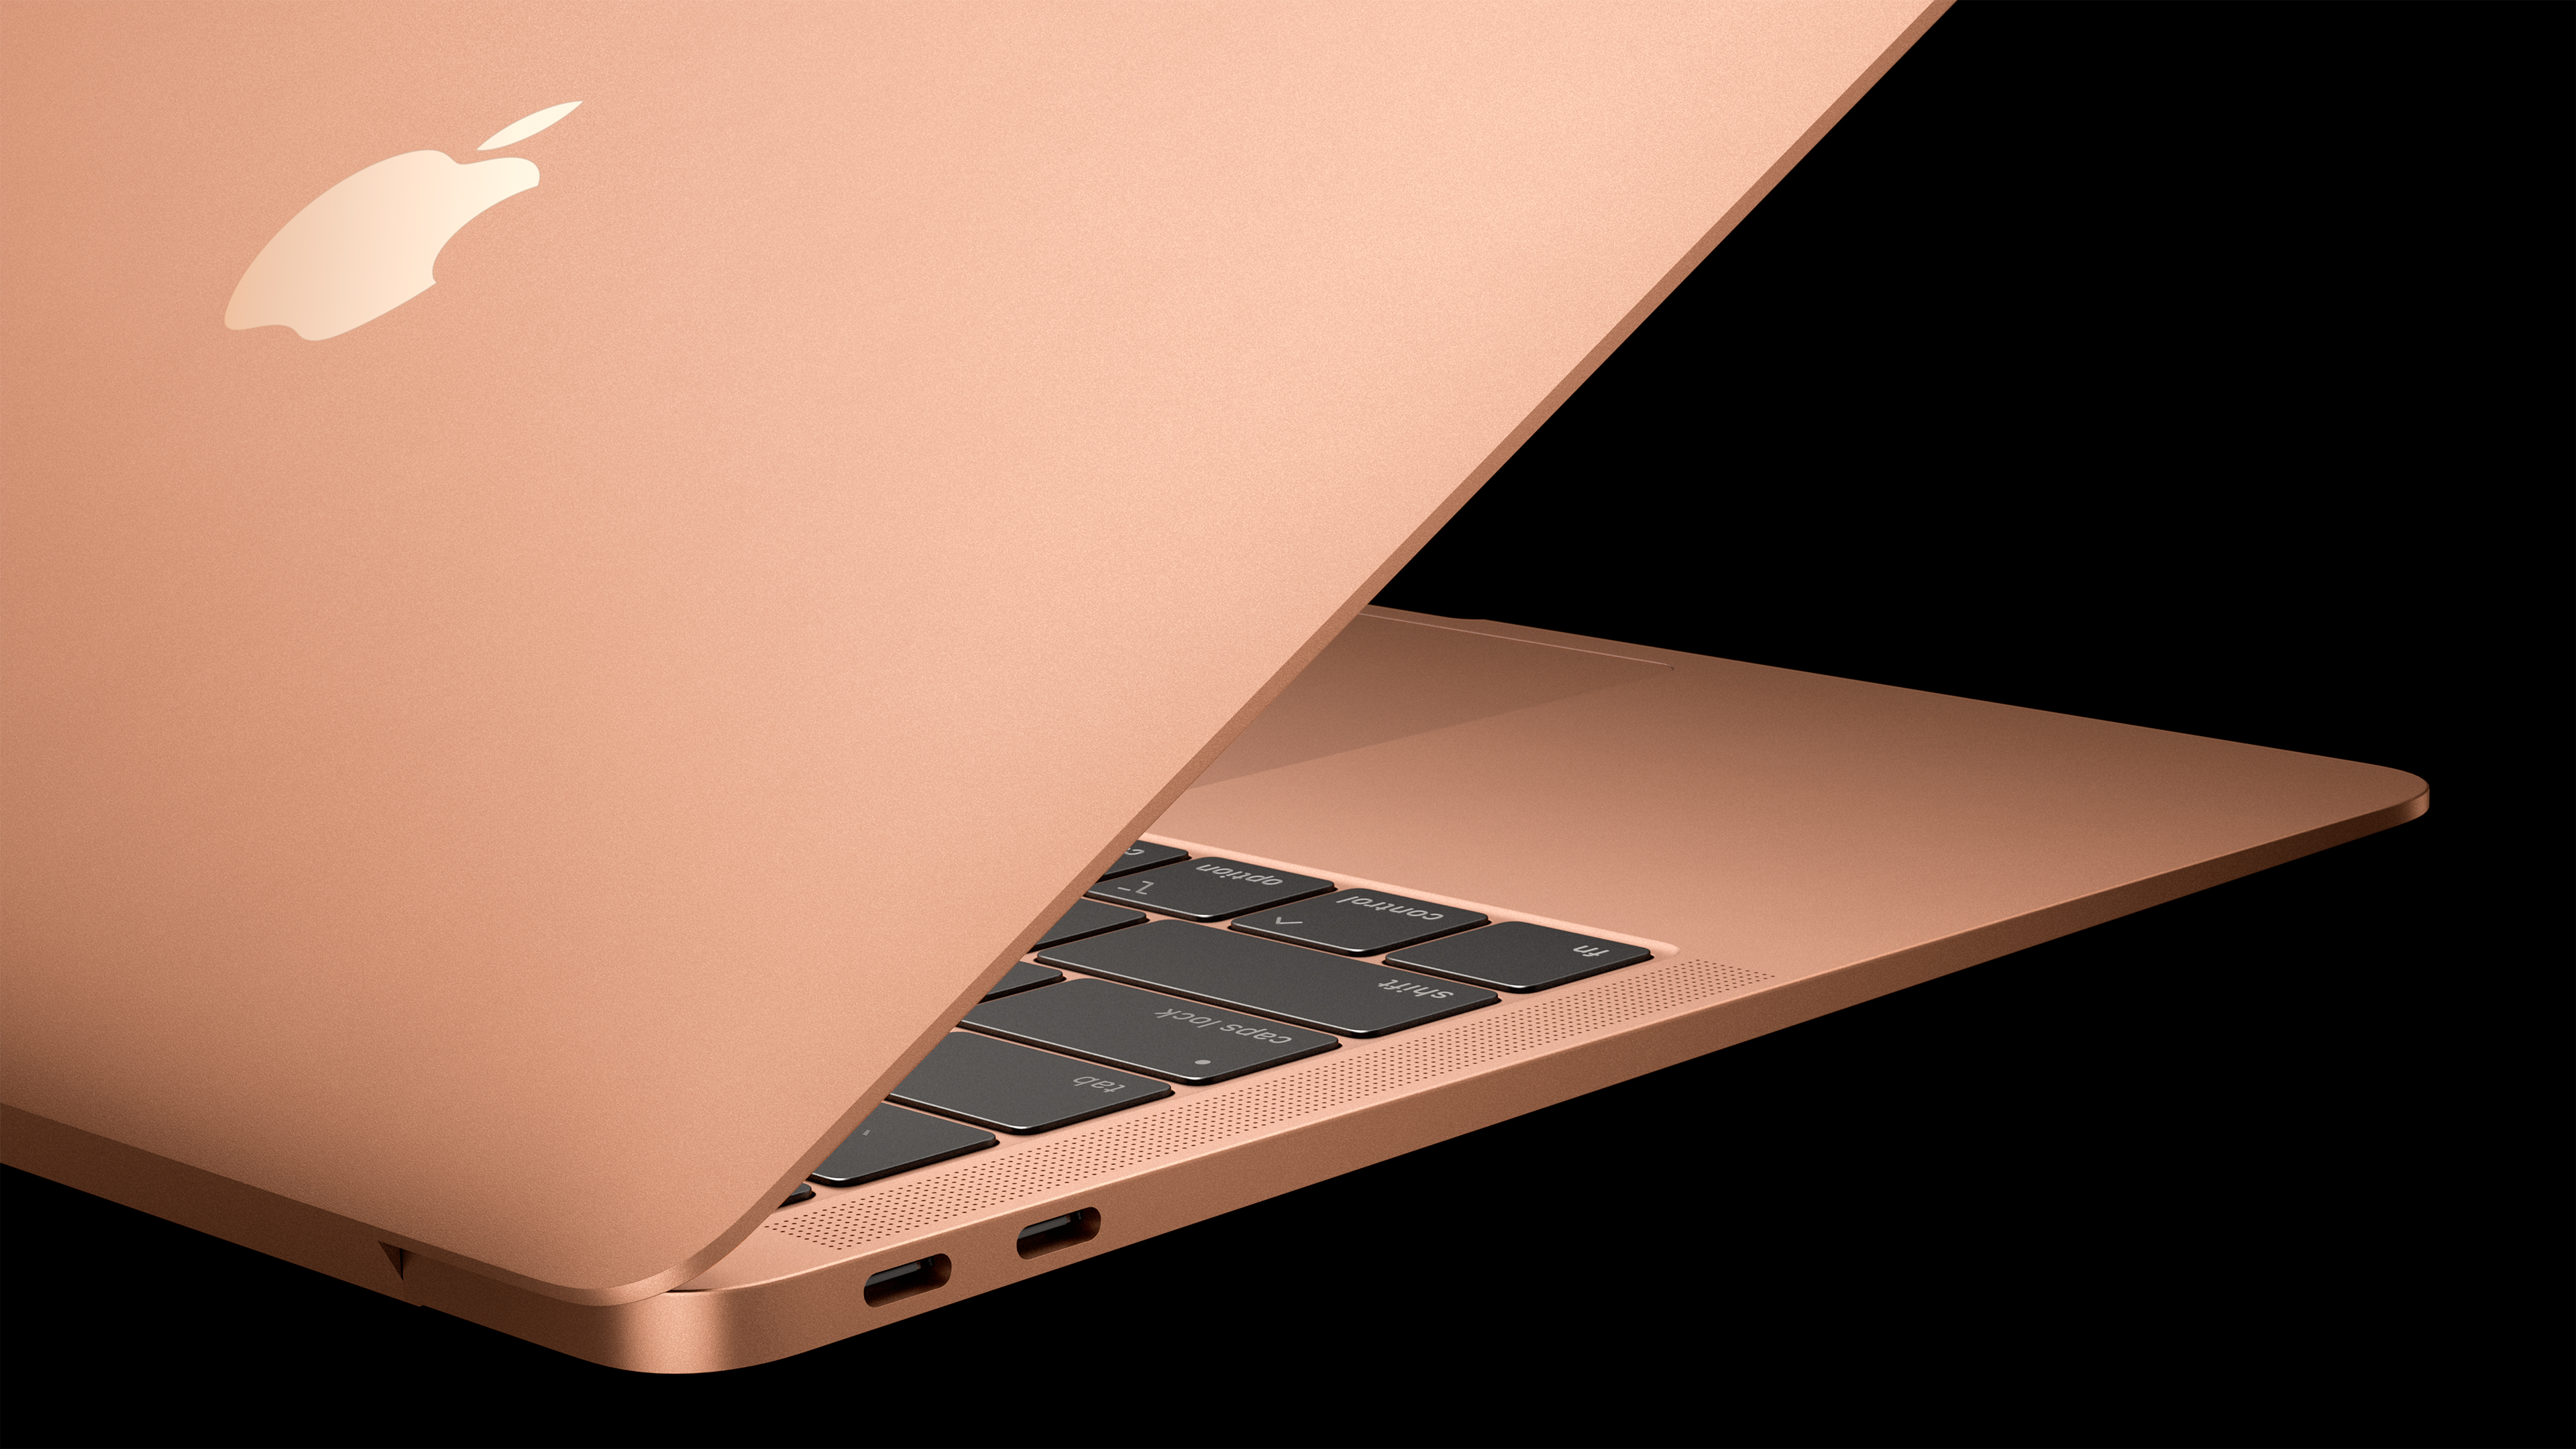 MacBook Air ahora con Retina Display y Touch ID desde ,999 MXN.